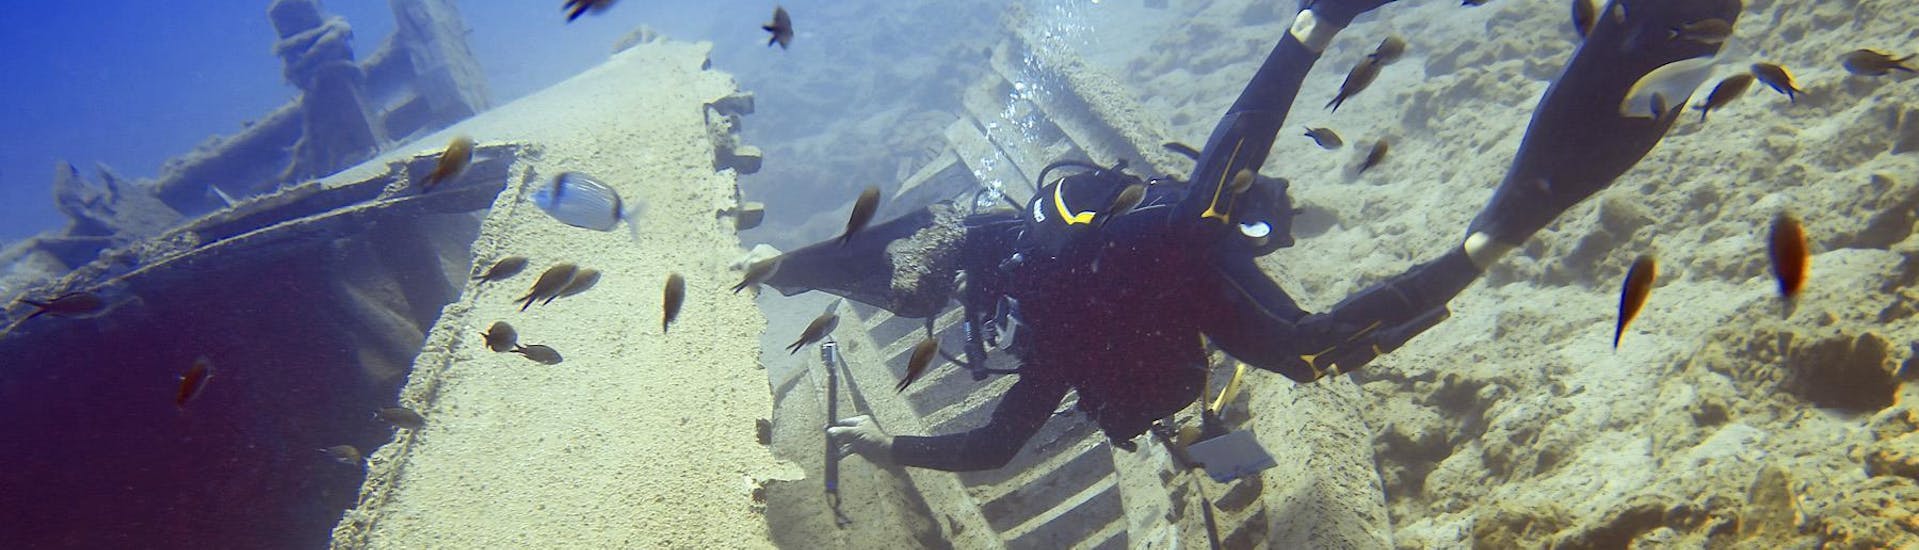 guided-dives-around-agios-nikolaos-bay-for-certified-divers-pelagos-dive-center-crete-hero